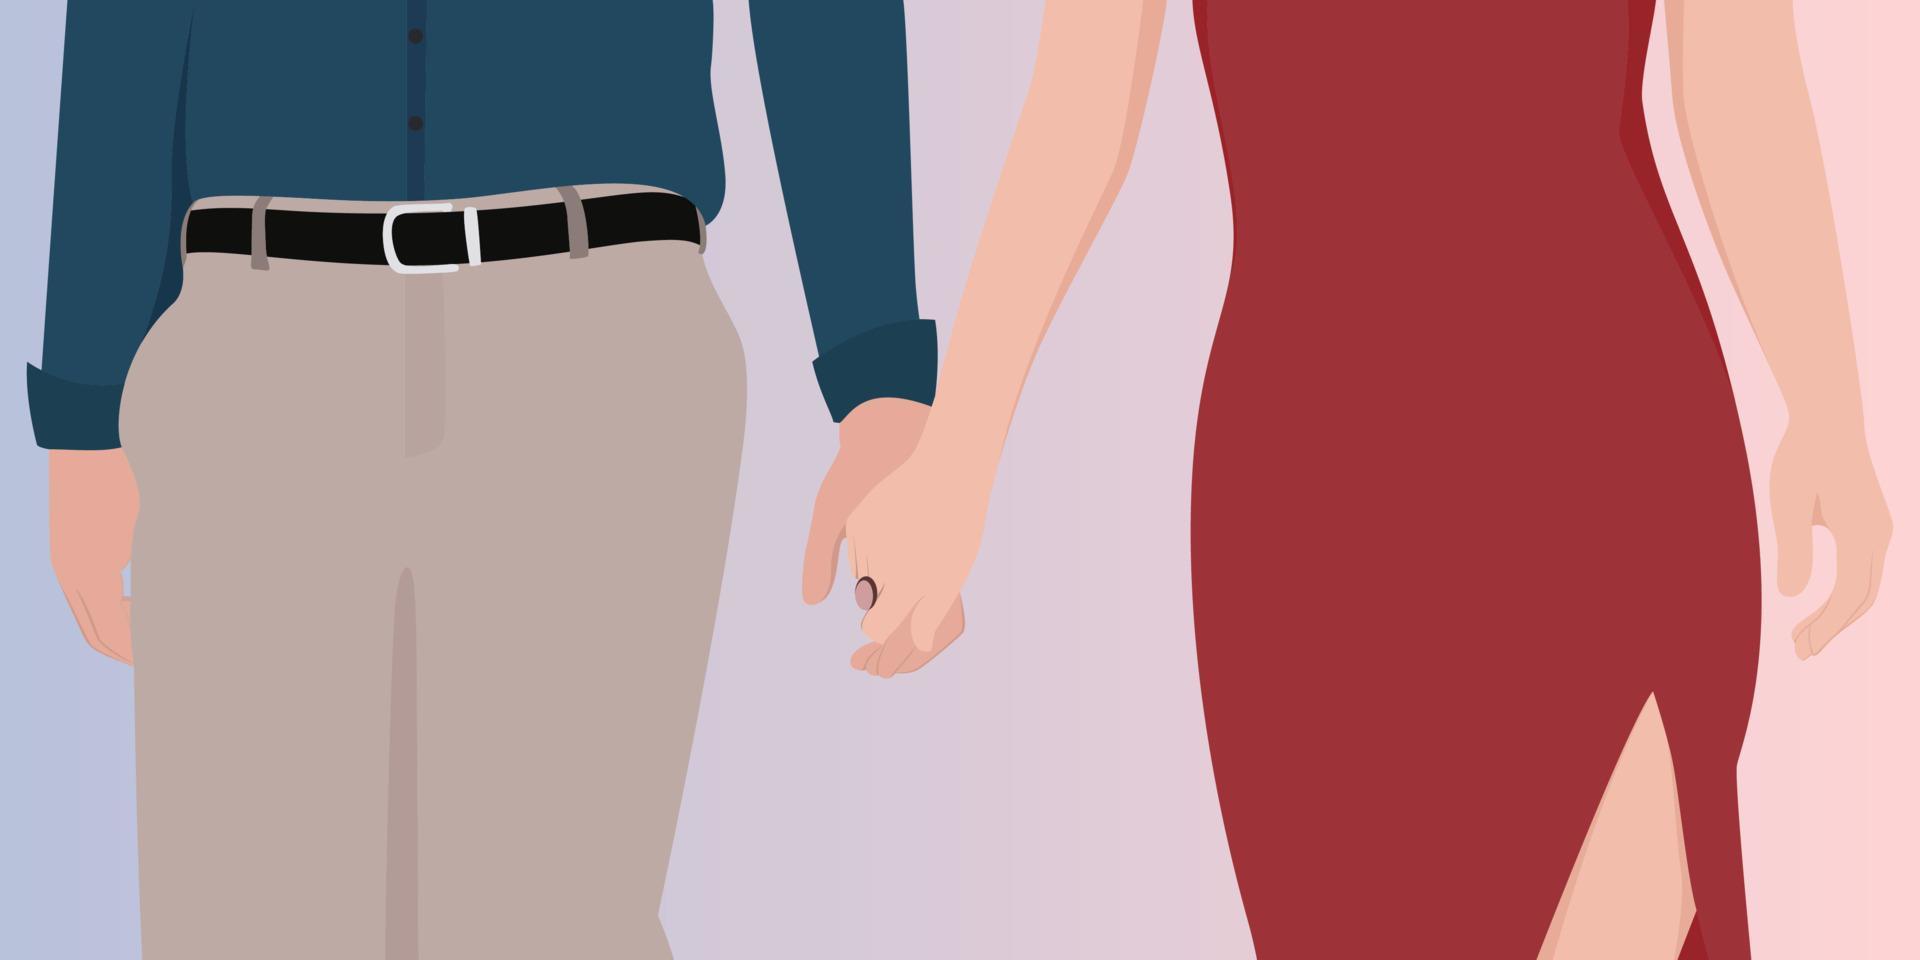 par som håller händerna på blå och rosa färggradient bakgrund, beskuren vektor karaktär illustration av lyckliga paret.